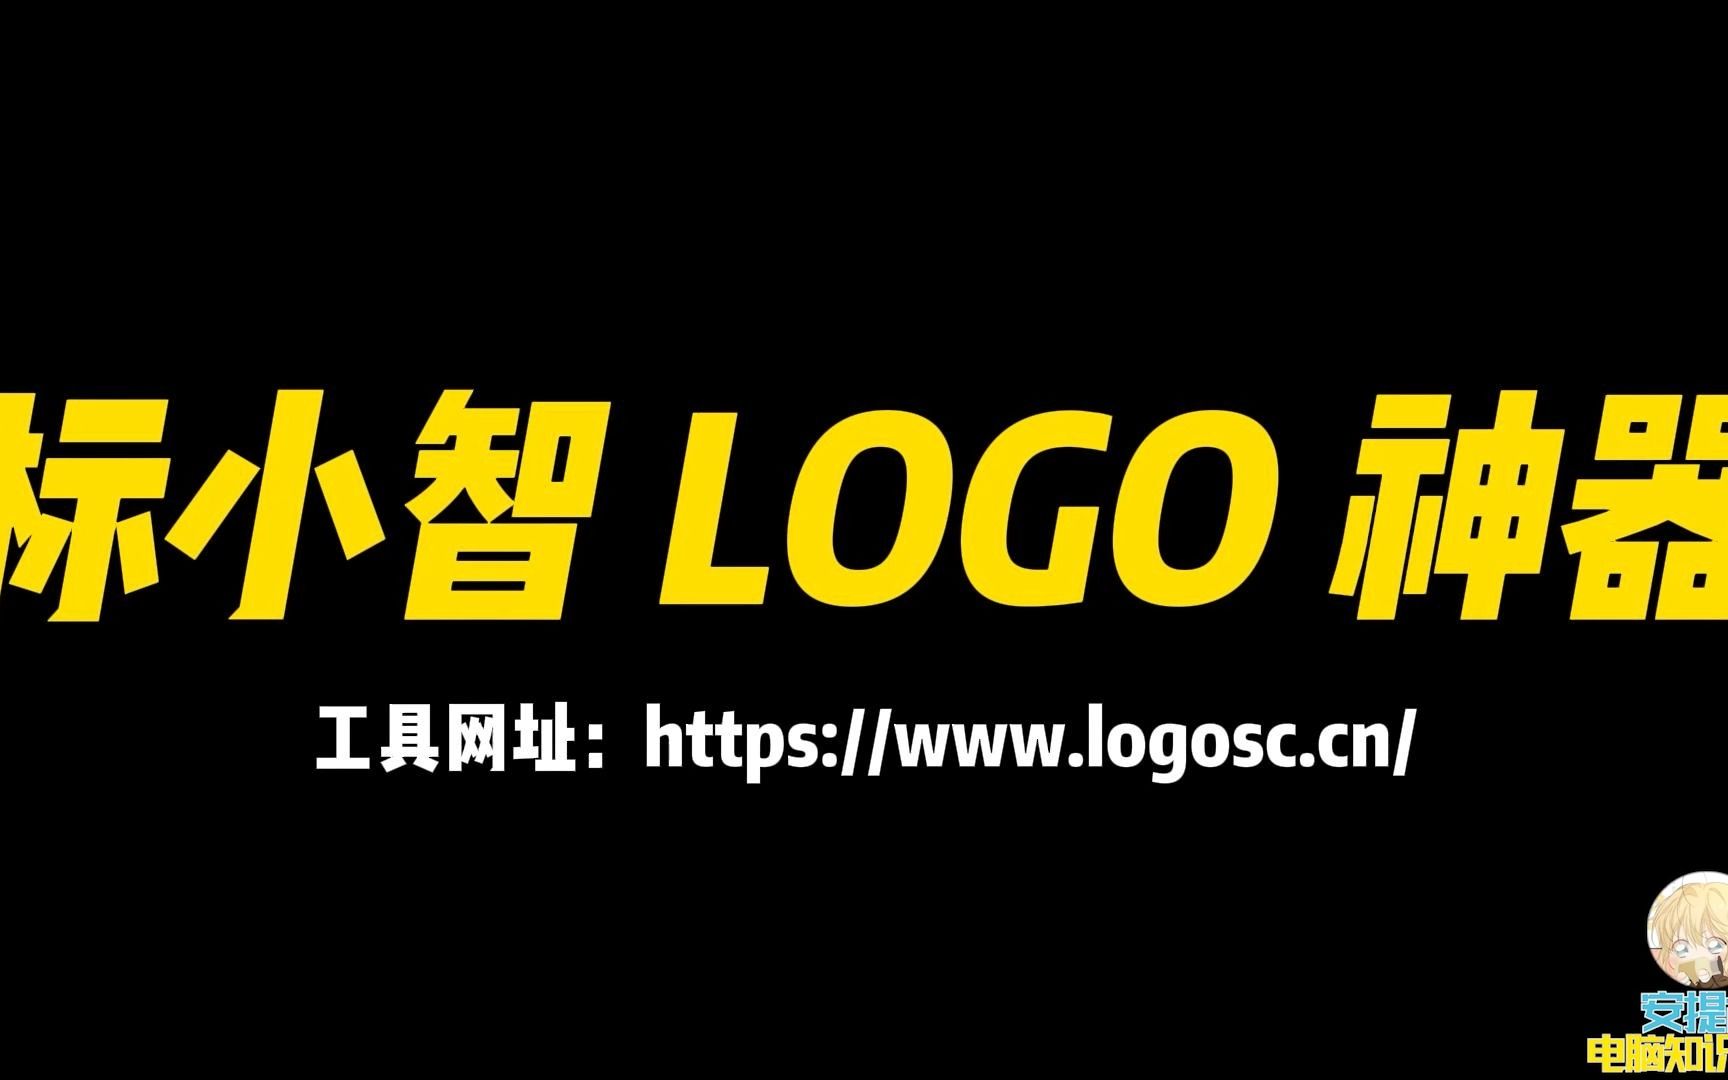 【安提古】电脑知识分享:ai logo 设计工具评测:标小智 logo 在线生成